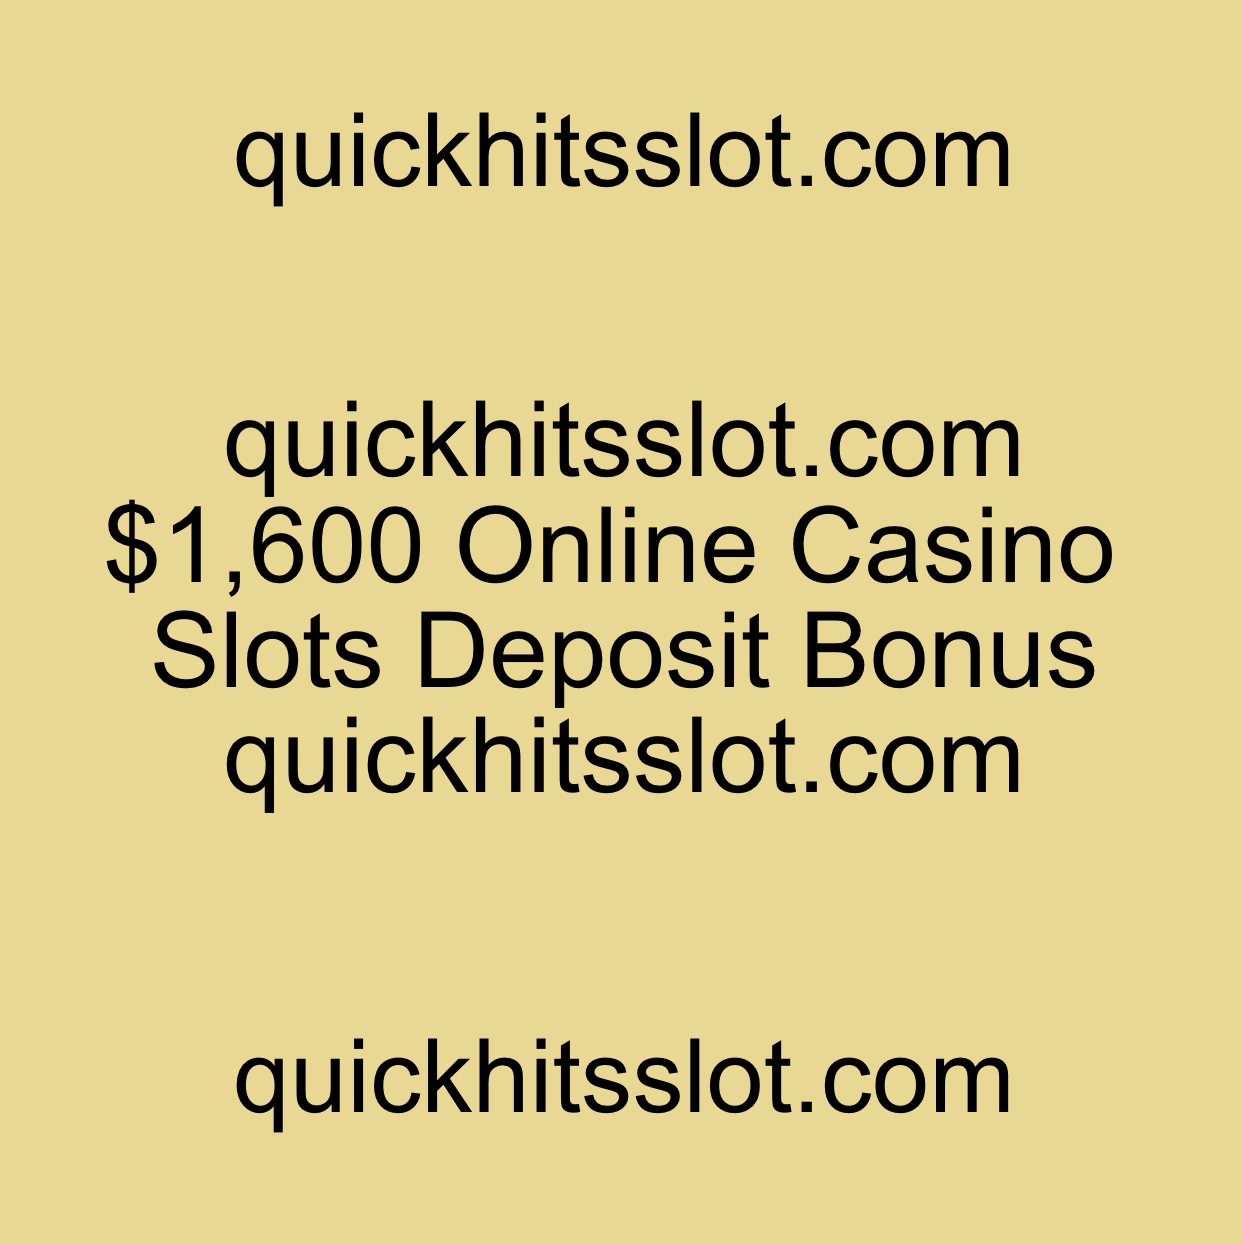 $1,600 Online Casino Slots Deposit Bonus quickhitsslot.com